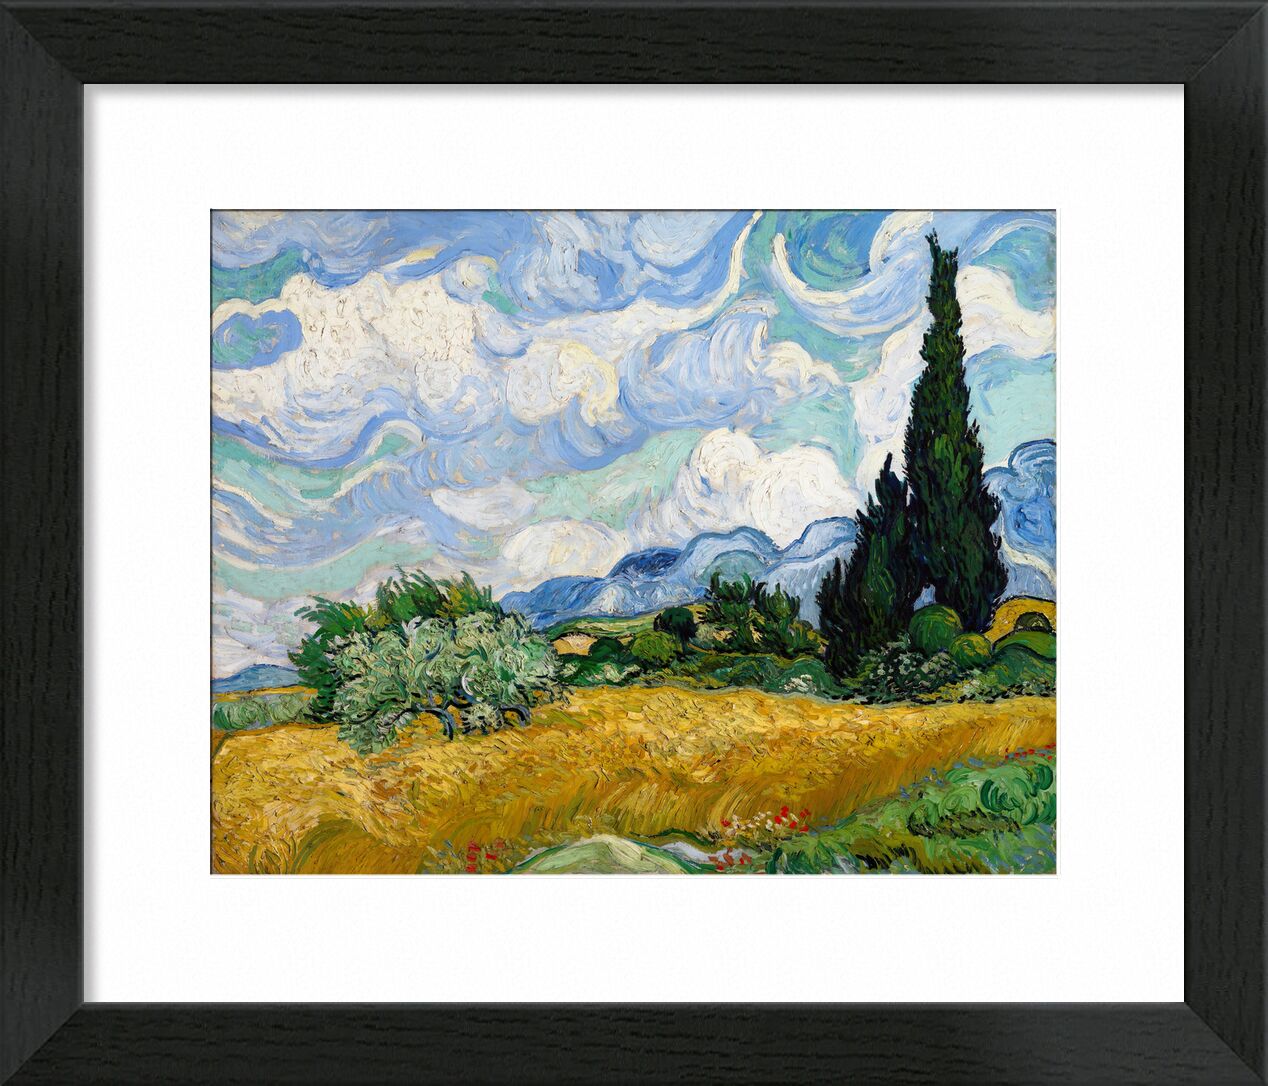 Wheat Field with Cypresses - VINCENT VAN GOGH 1889 desde Bellas artes, Prodi Art, pintura, nubes, árbol, prado, verde, naturaleza, campos de trigo, ciprés, campos, arbusto